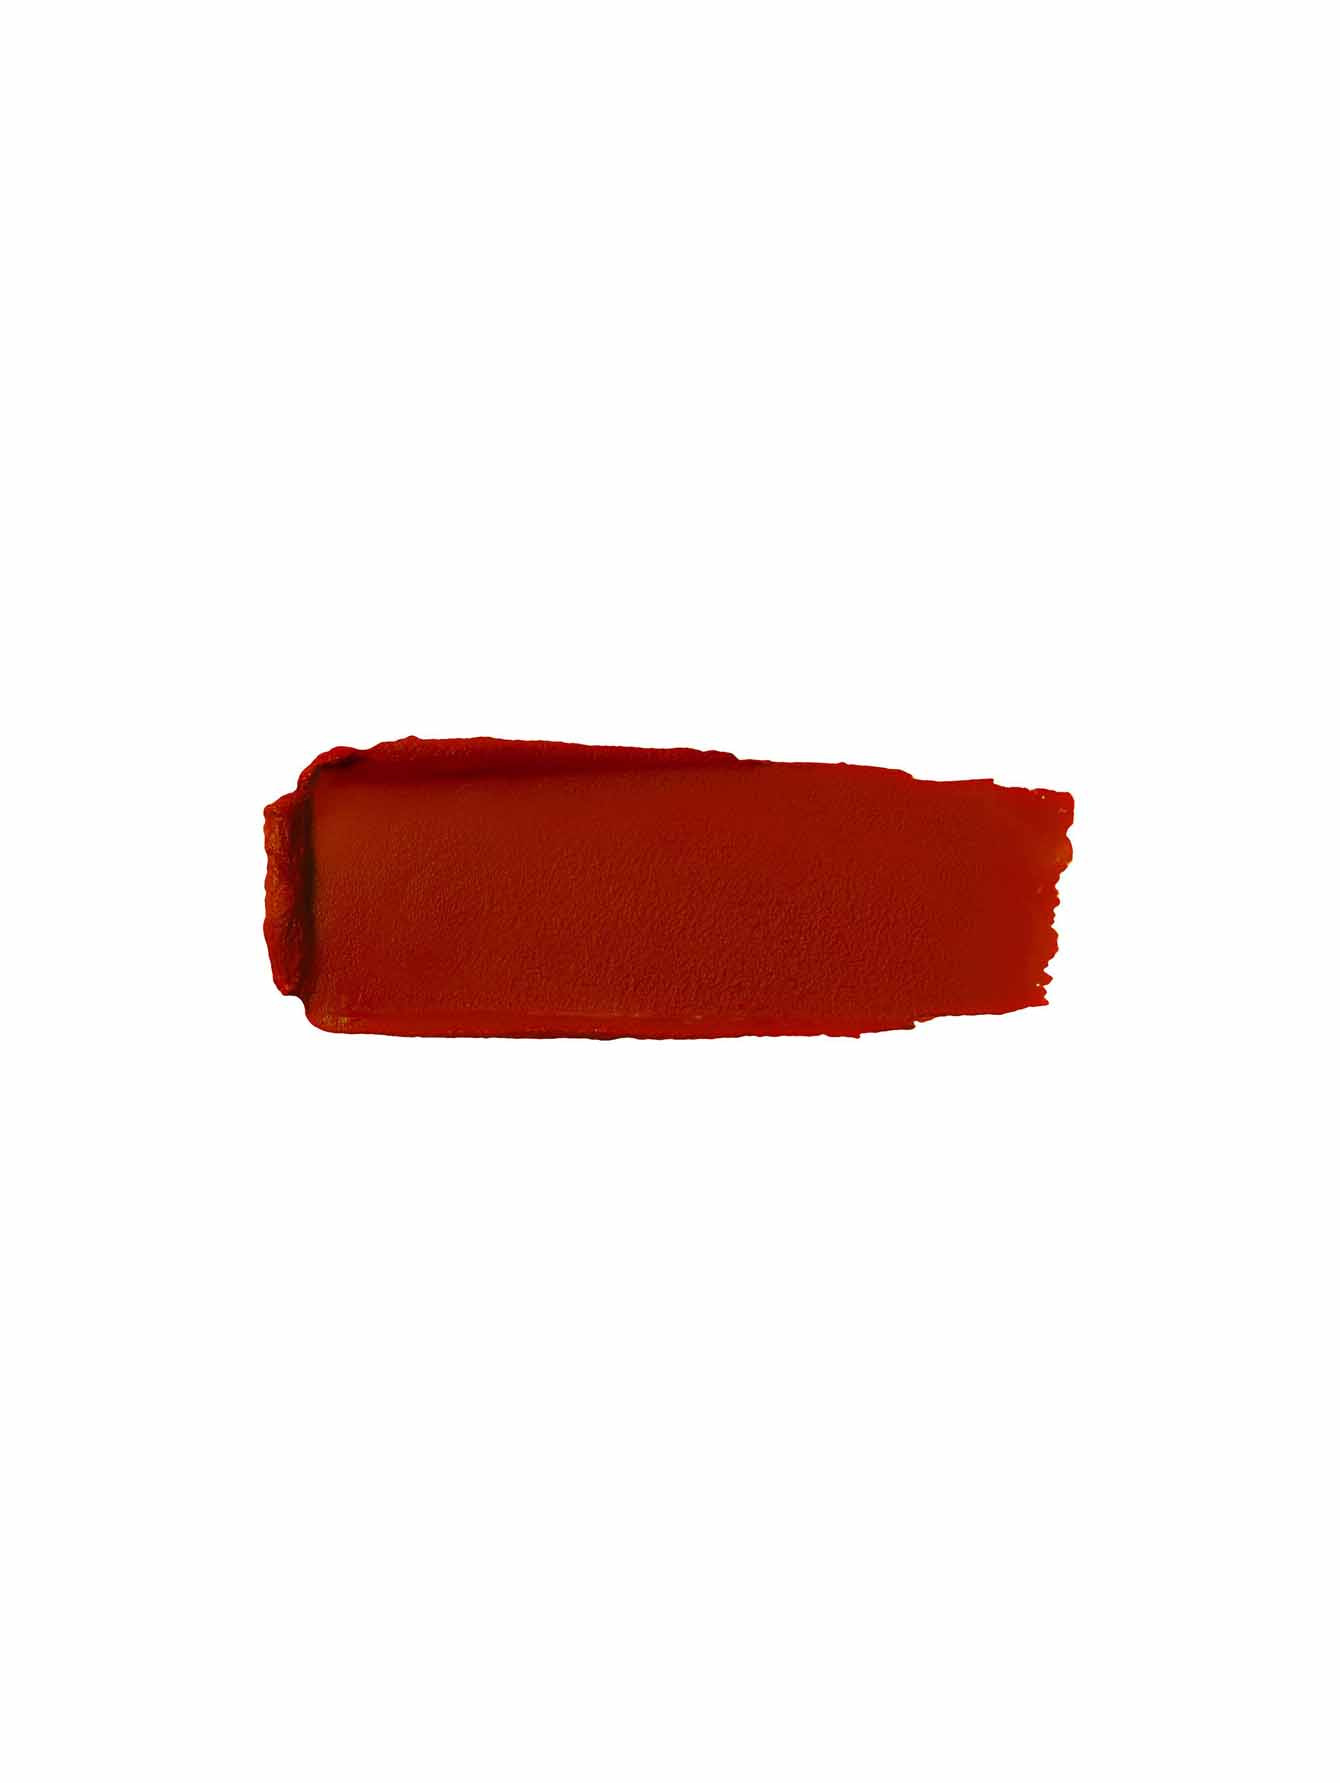 Губная помада Rouge G, №1830 Огненный красный, 3,5 г - Обтравка1